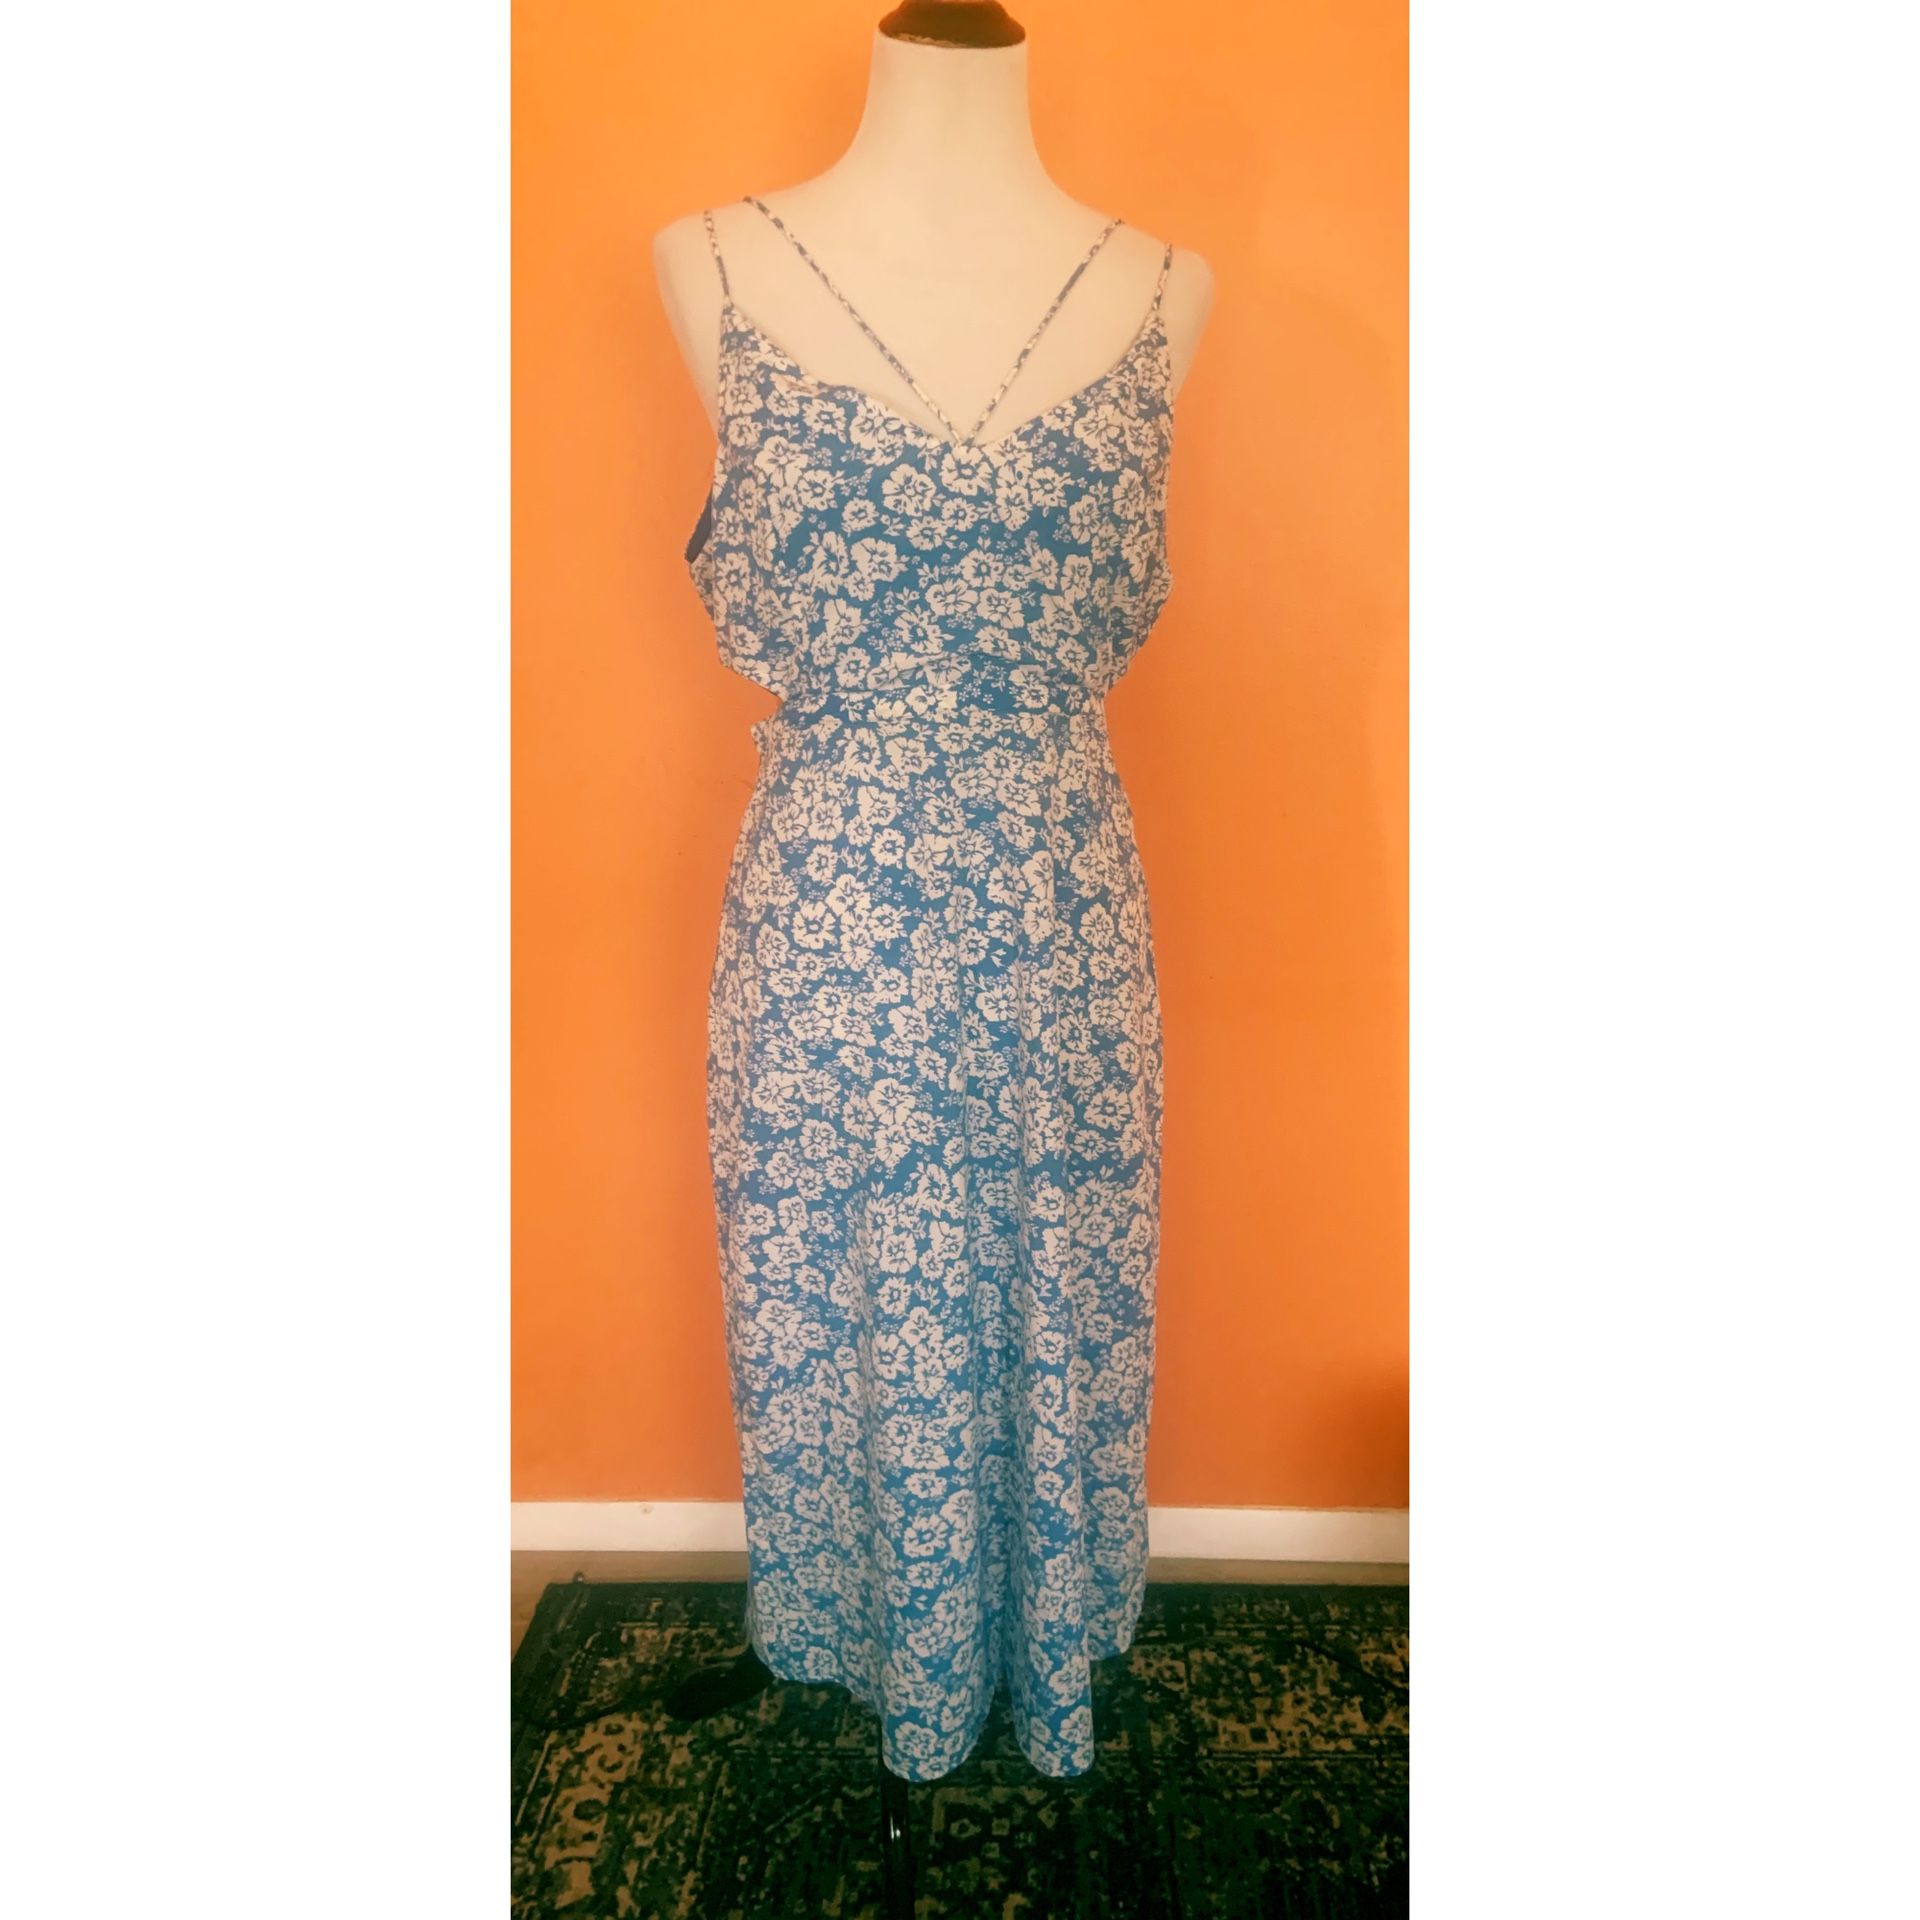 NEW Top Shop blue floral cut out dress size 10